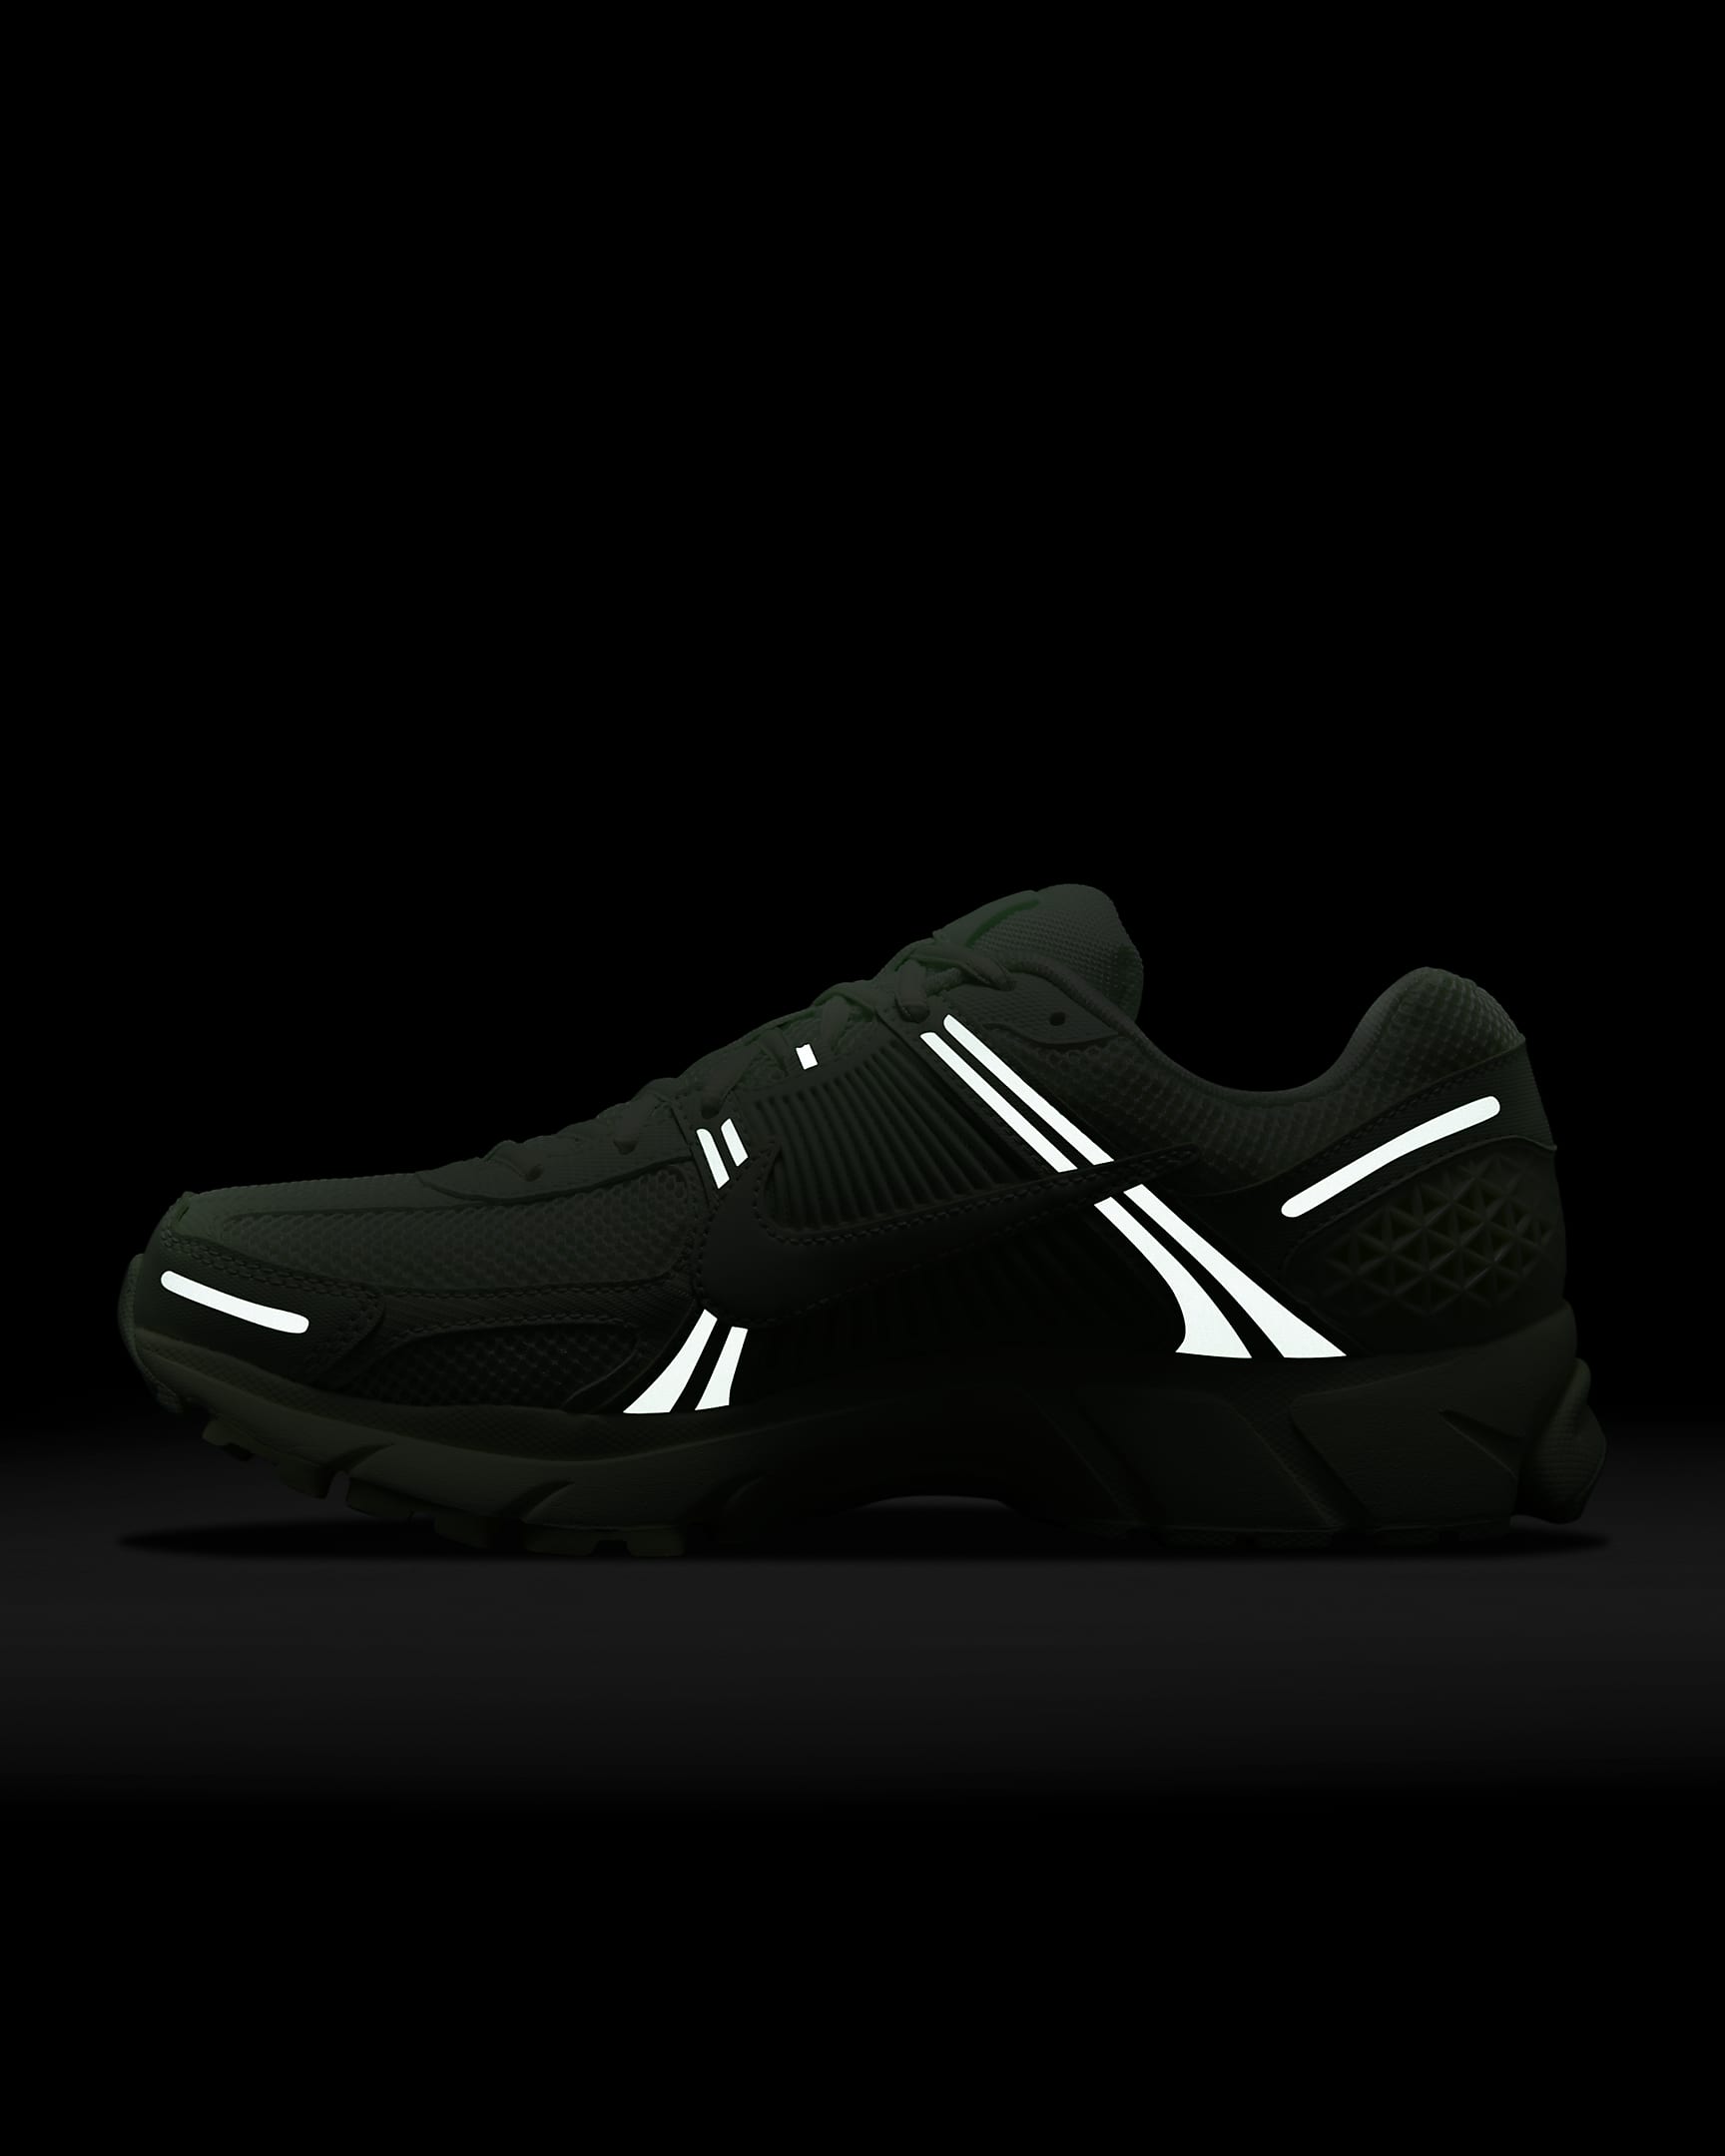 Nike Zoom Vomero 5 Men's Shoes - Vapor Green/Vapor Green